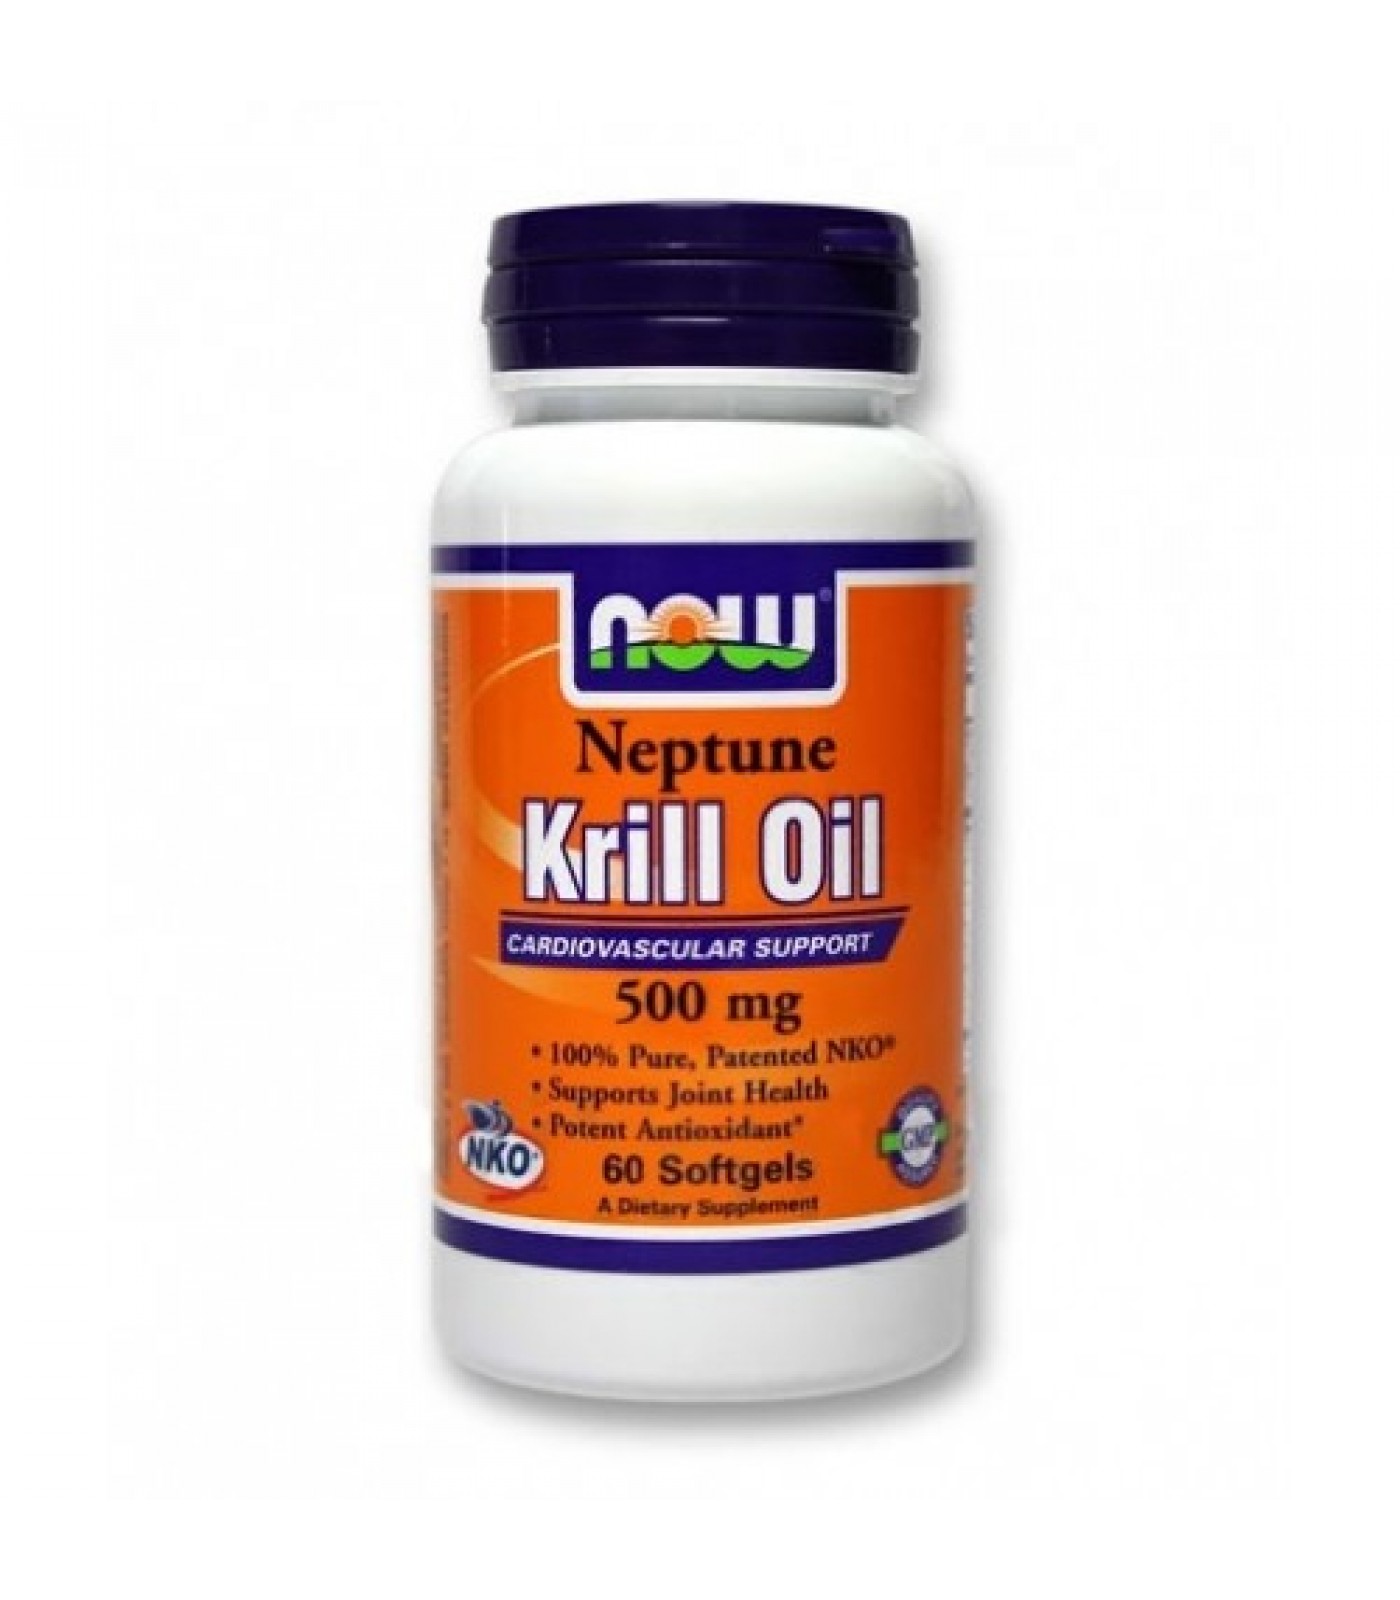 NOW - Neptune Krill Oil 500mg. / 60 Softgels